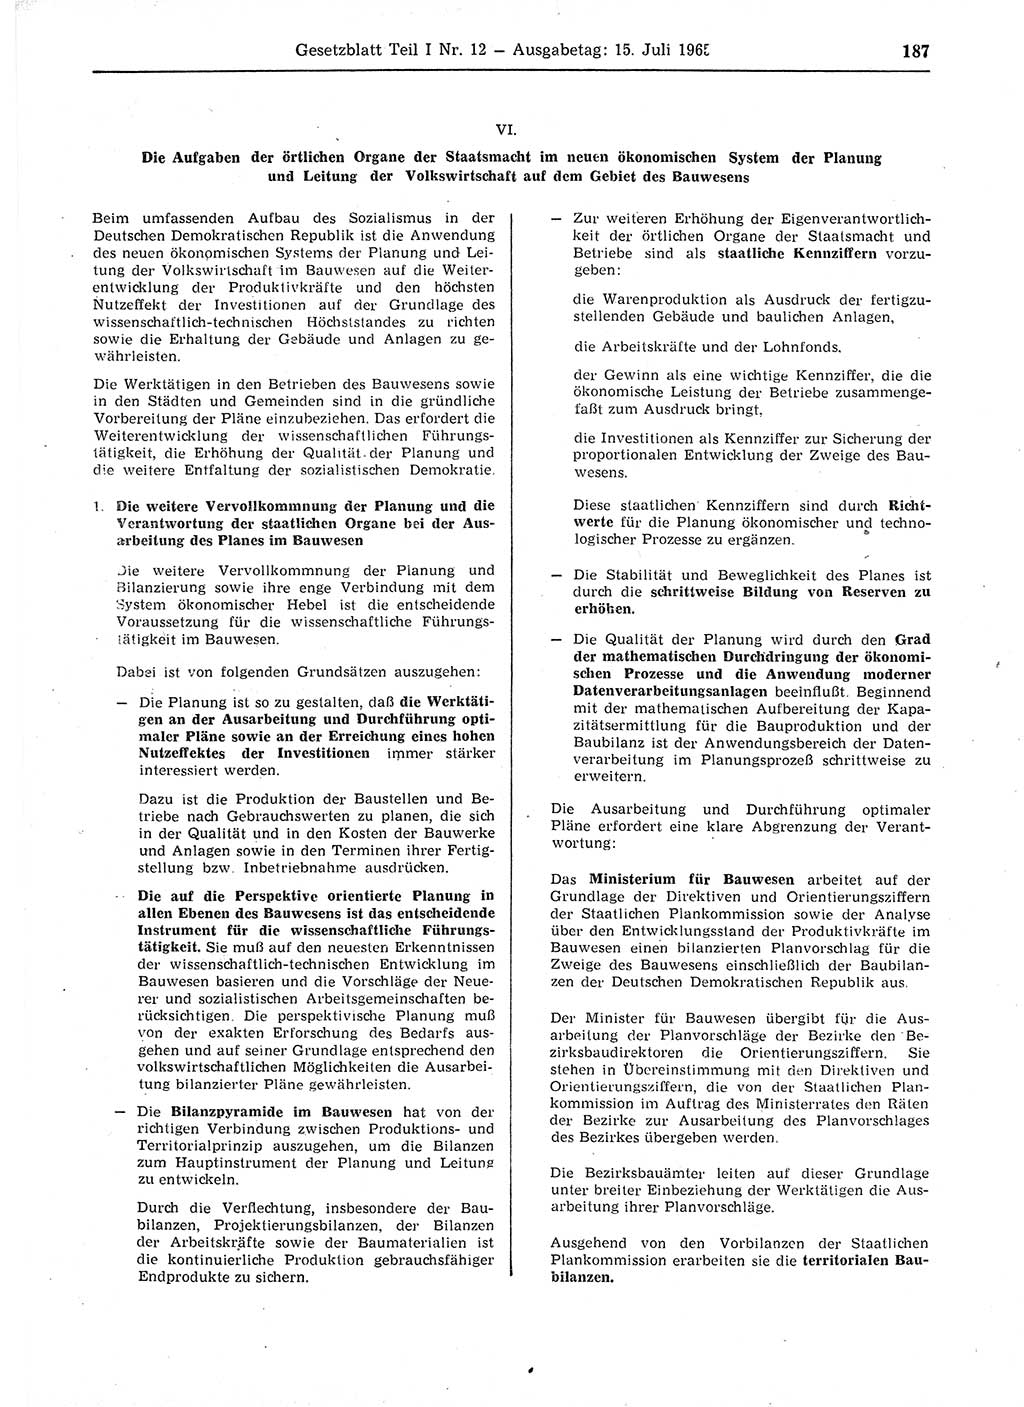 Gesetzblatt (GBl.) der Deutschen Demokratischen Republik (DDR) Teil Ⅰ 1965, Seite 187 (GBl. DDR Ⅰ 1965, S. 187)